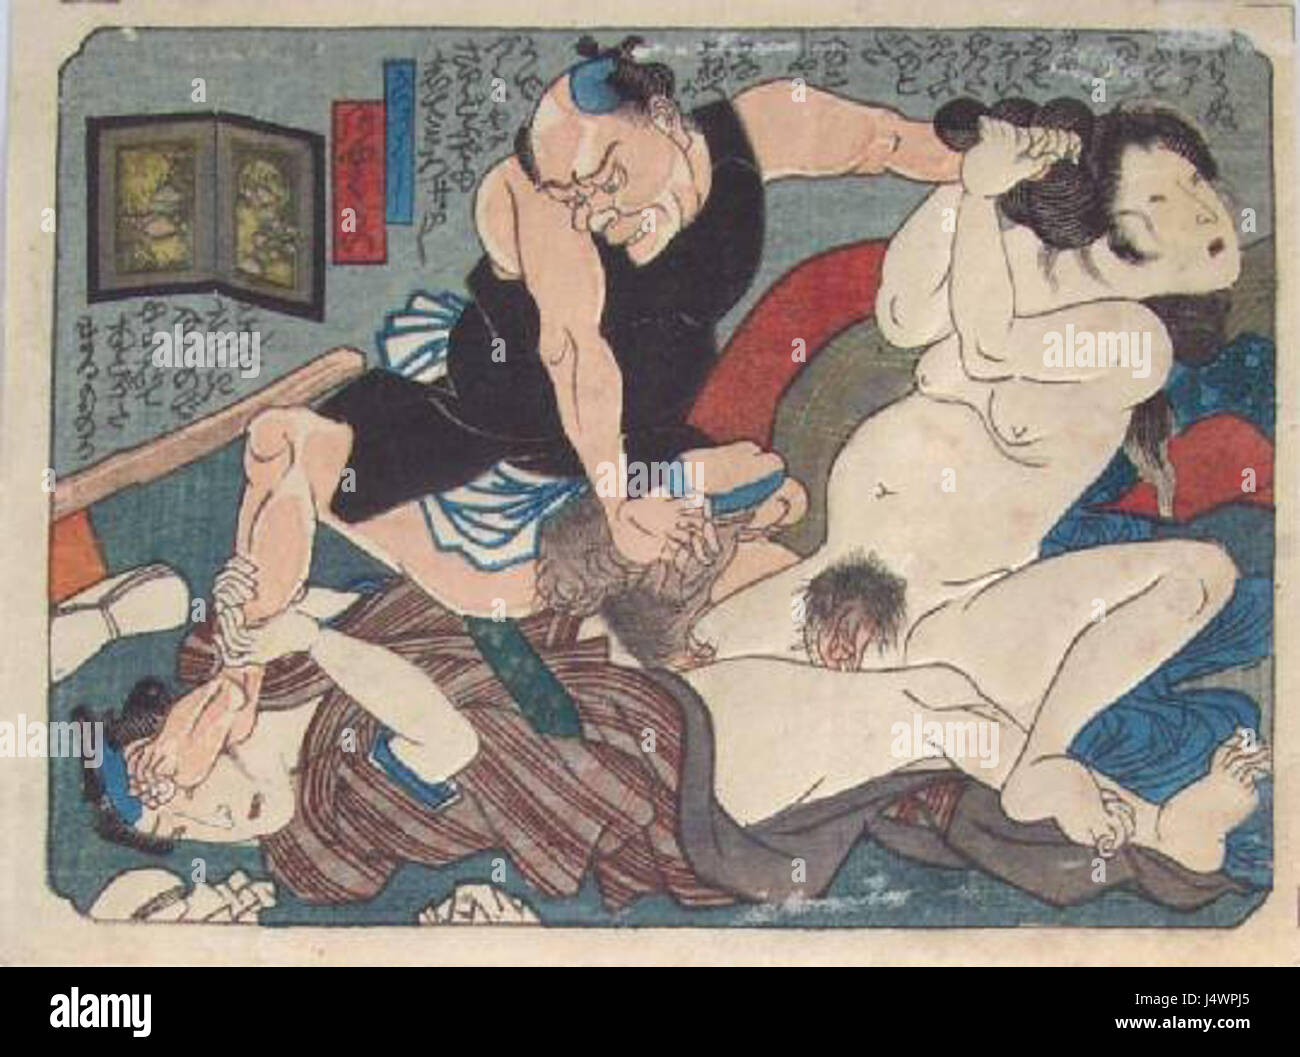 японская историческая эротика фото 25